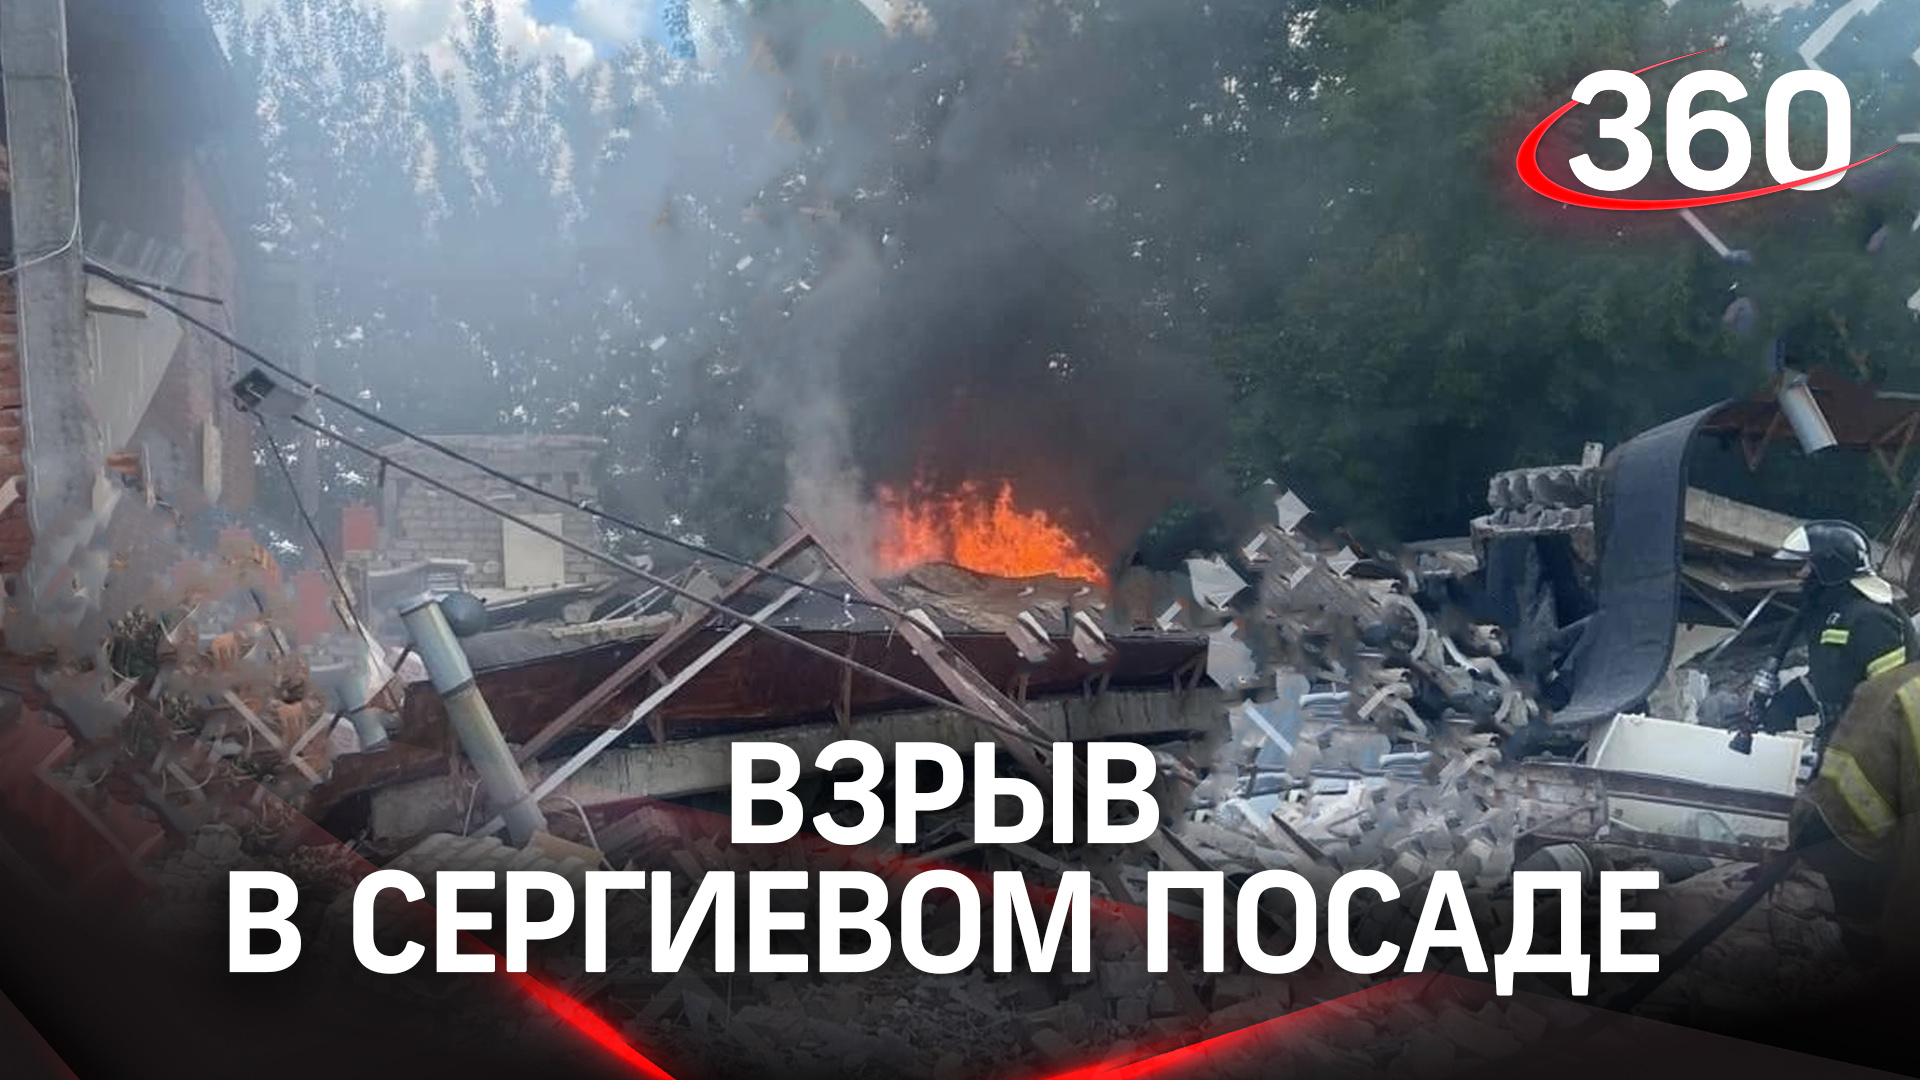 Двое погибли при взрыве гаражей в Сергиевом Посаде. Первые кадры с места ЧП